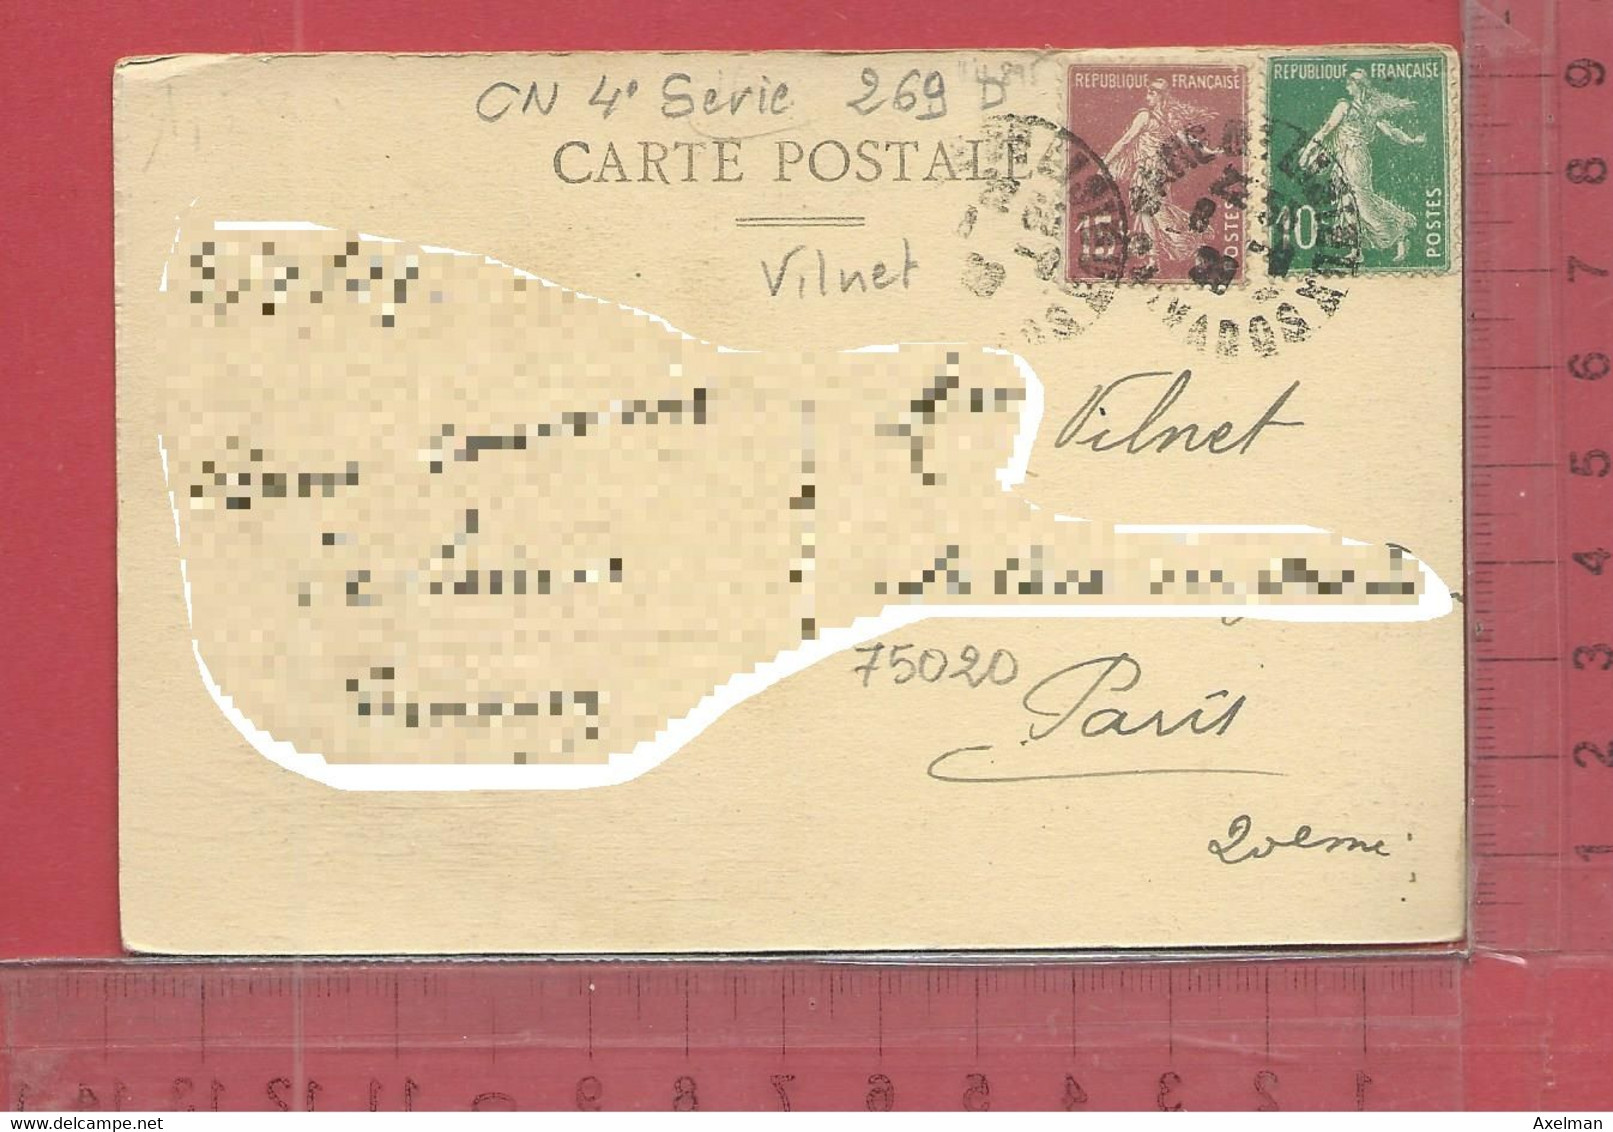 CARTE NOMINATIVE : VILNET  à  75020  Paris - Genealogy